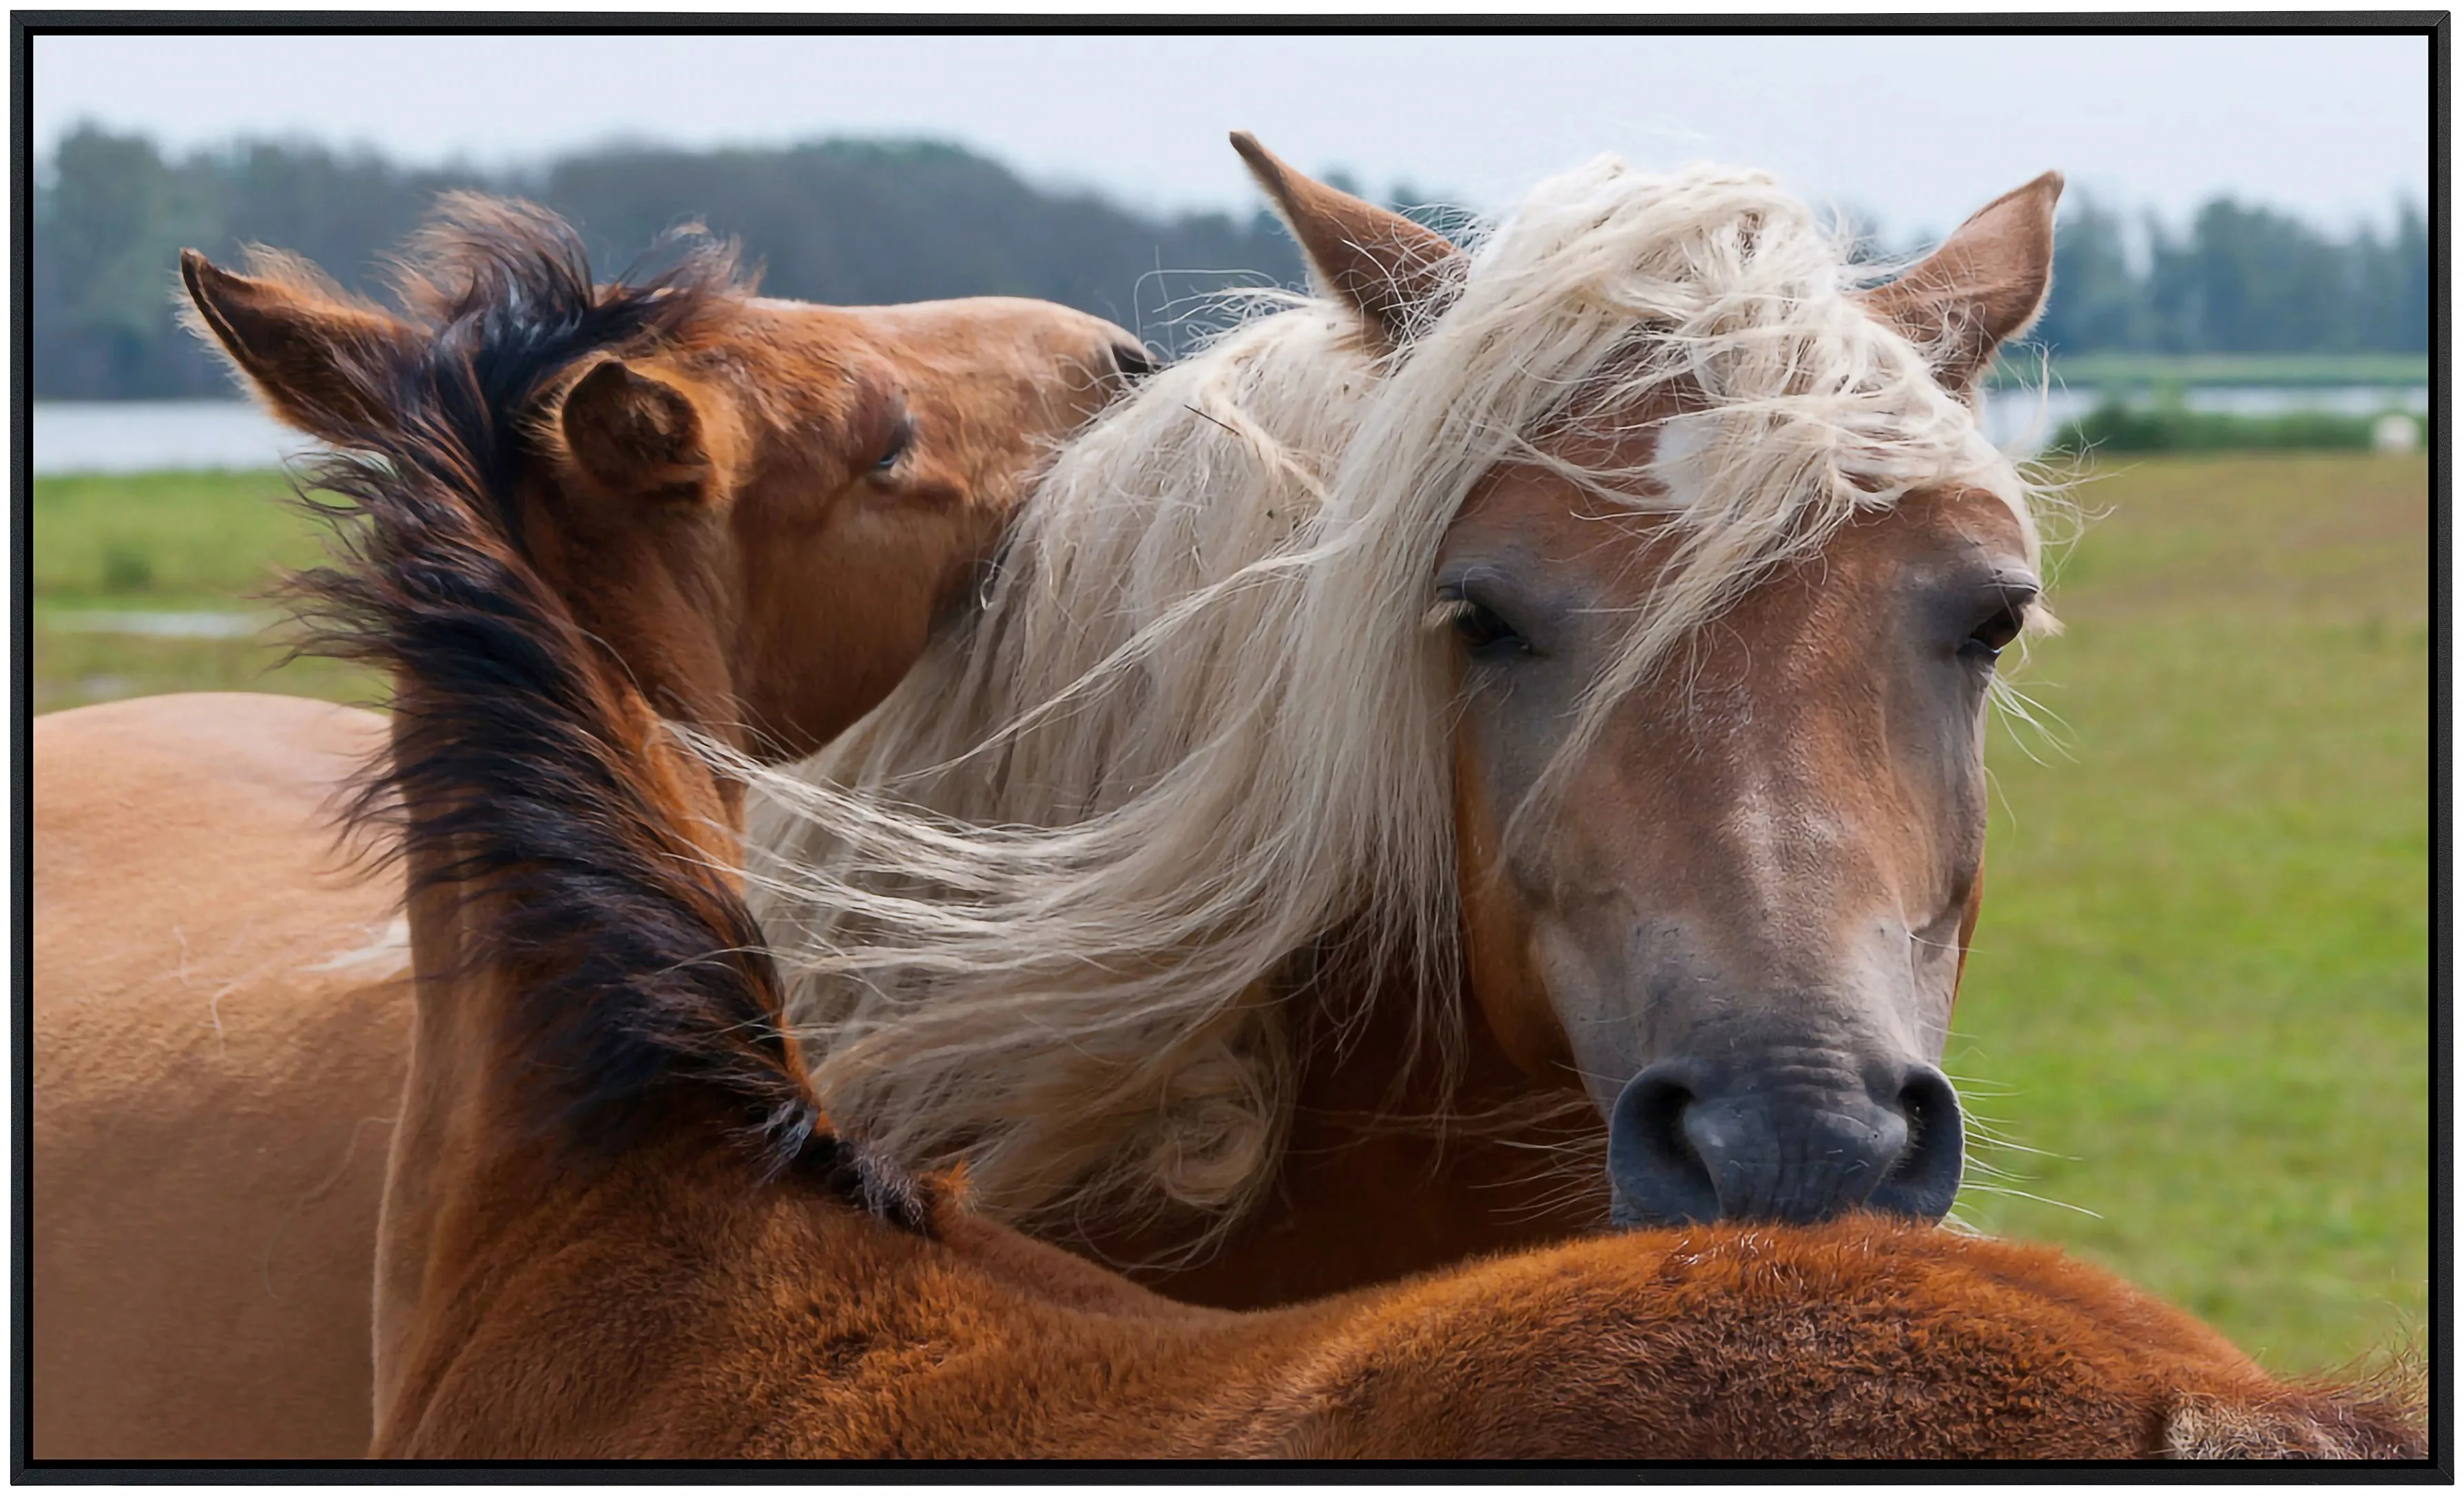 Papermoon Infrarotheizung »Pferde«, sehr angenehme Strahlungswärme günstig online kaufen